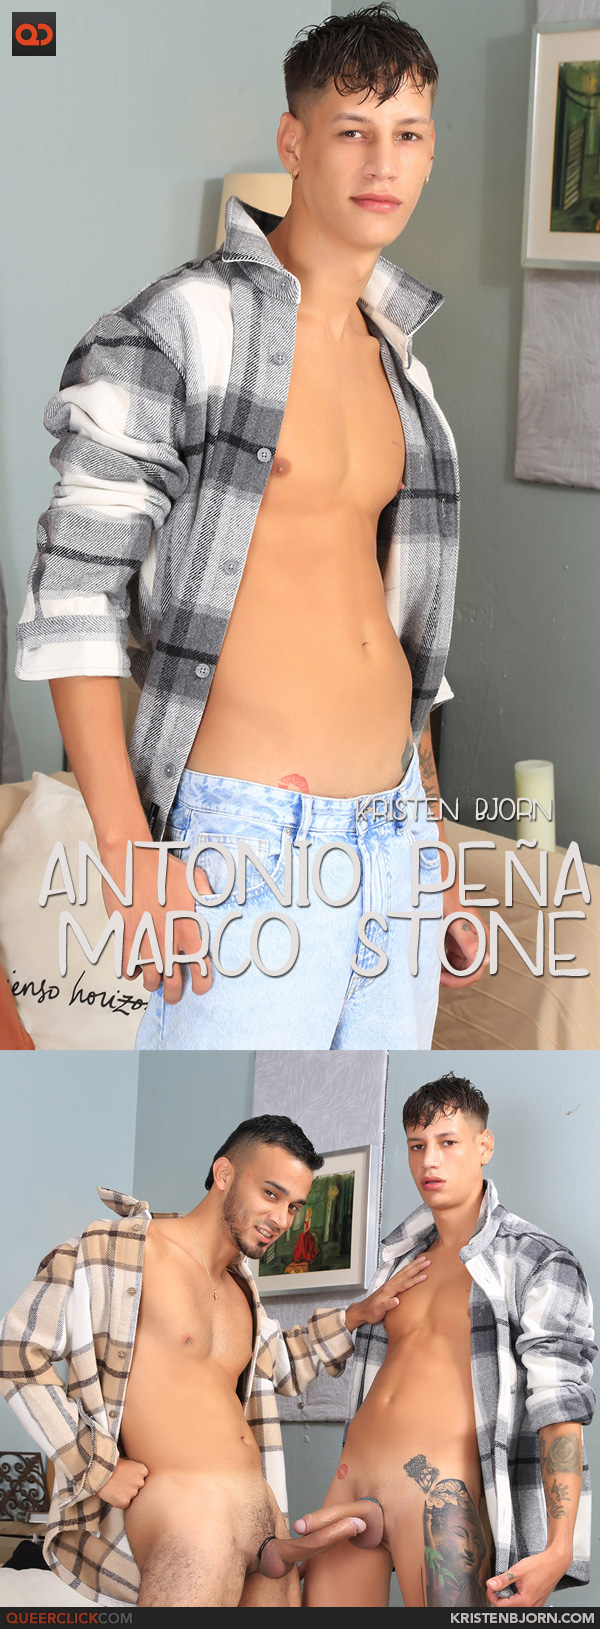 Kristen Bjorn Antonio Peña and Marco Stone -Casting Couch #480 picture